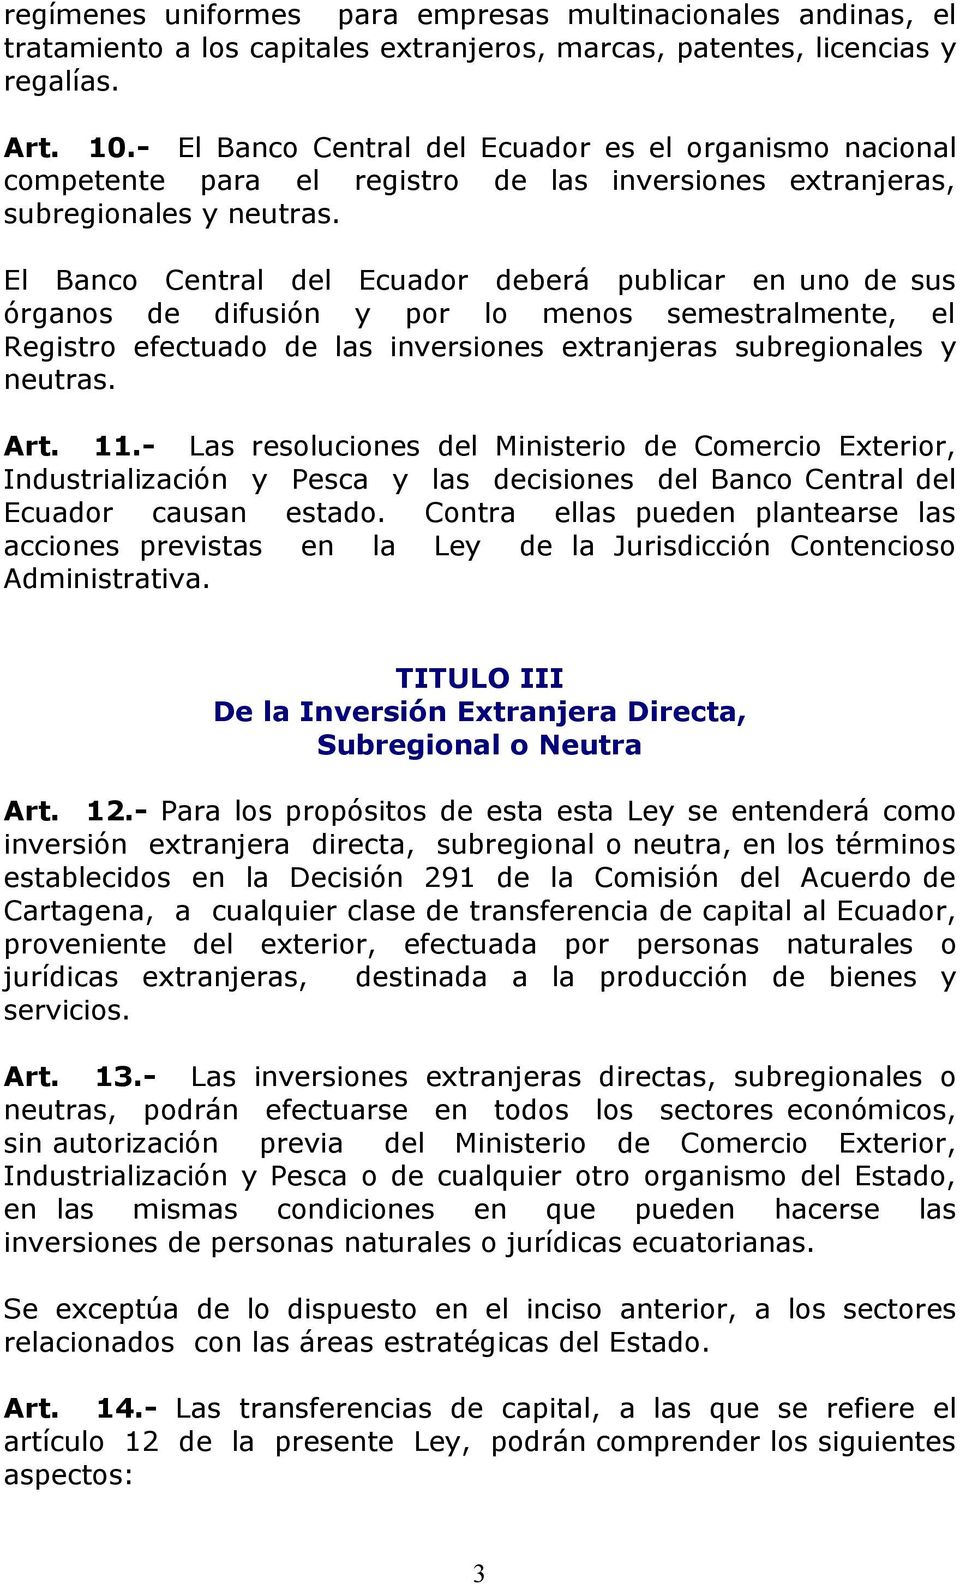 El Banco Central del Ecuador deberá publicar en uno de sus órganos de difusión y por lo menos semestralmente, el Registro efectuado de las inversiones extranjeras subregionales y neutras. Art. 11.